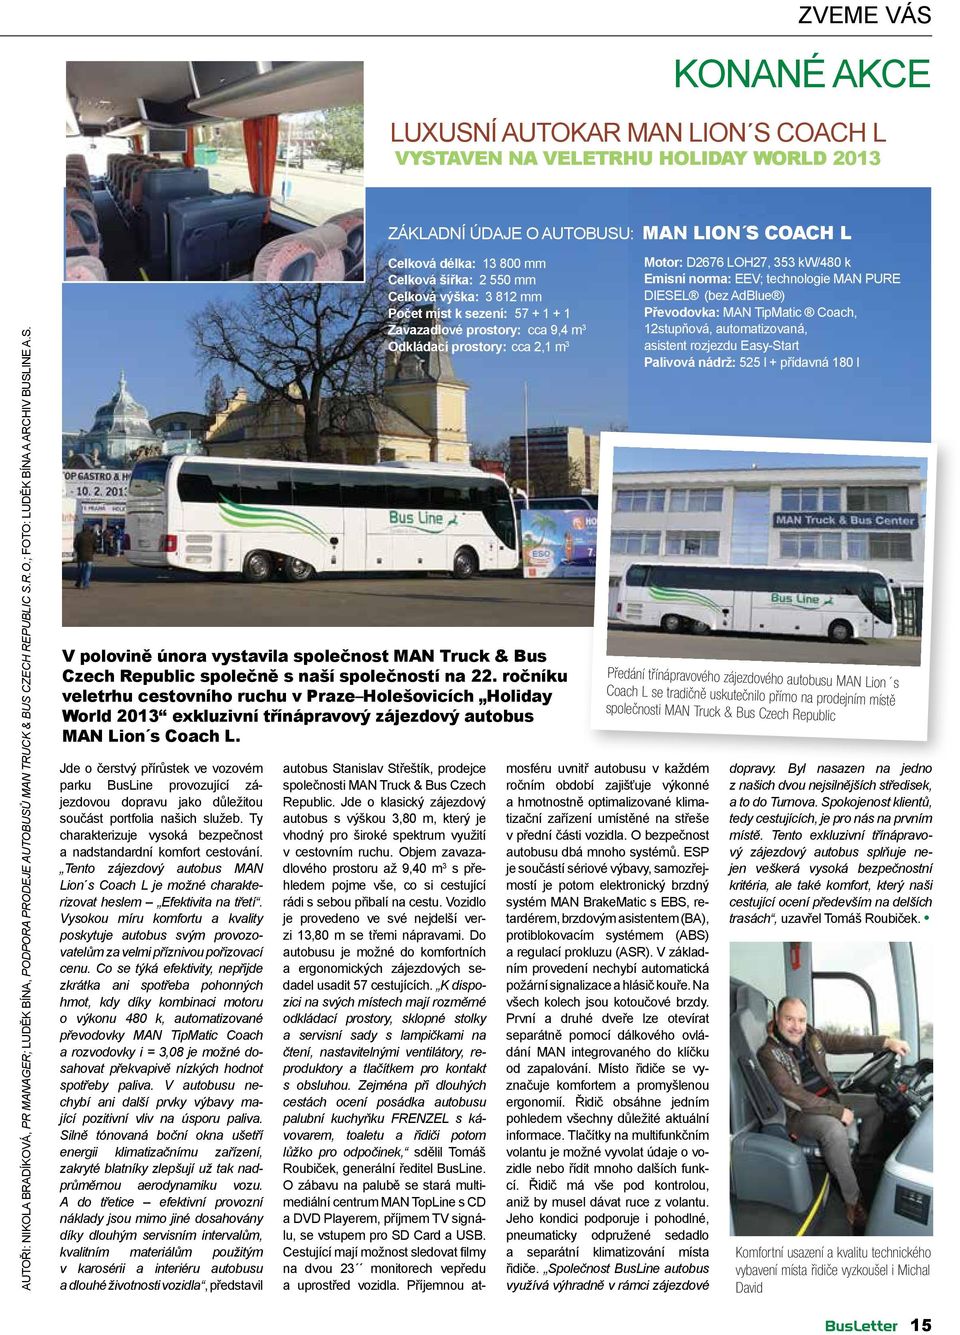 ročníku veletrhu cestovního ruchu v Praze Holešovicích Holiday World 2013 exkluzivní třínápravový zájezdový autobus MAN Lion s Coach L.